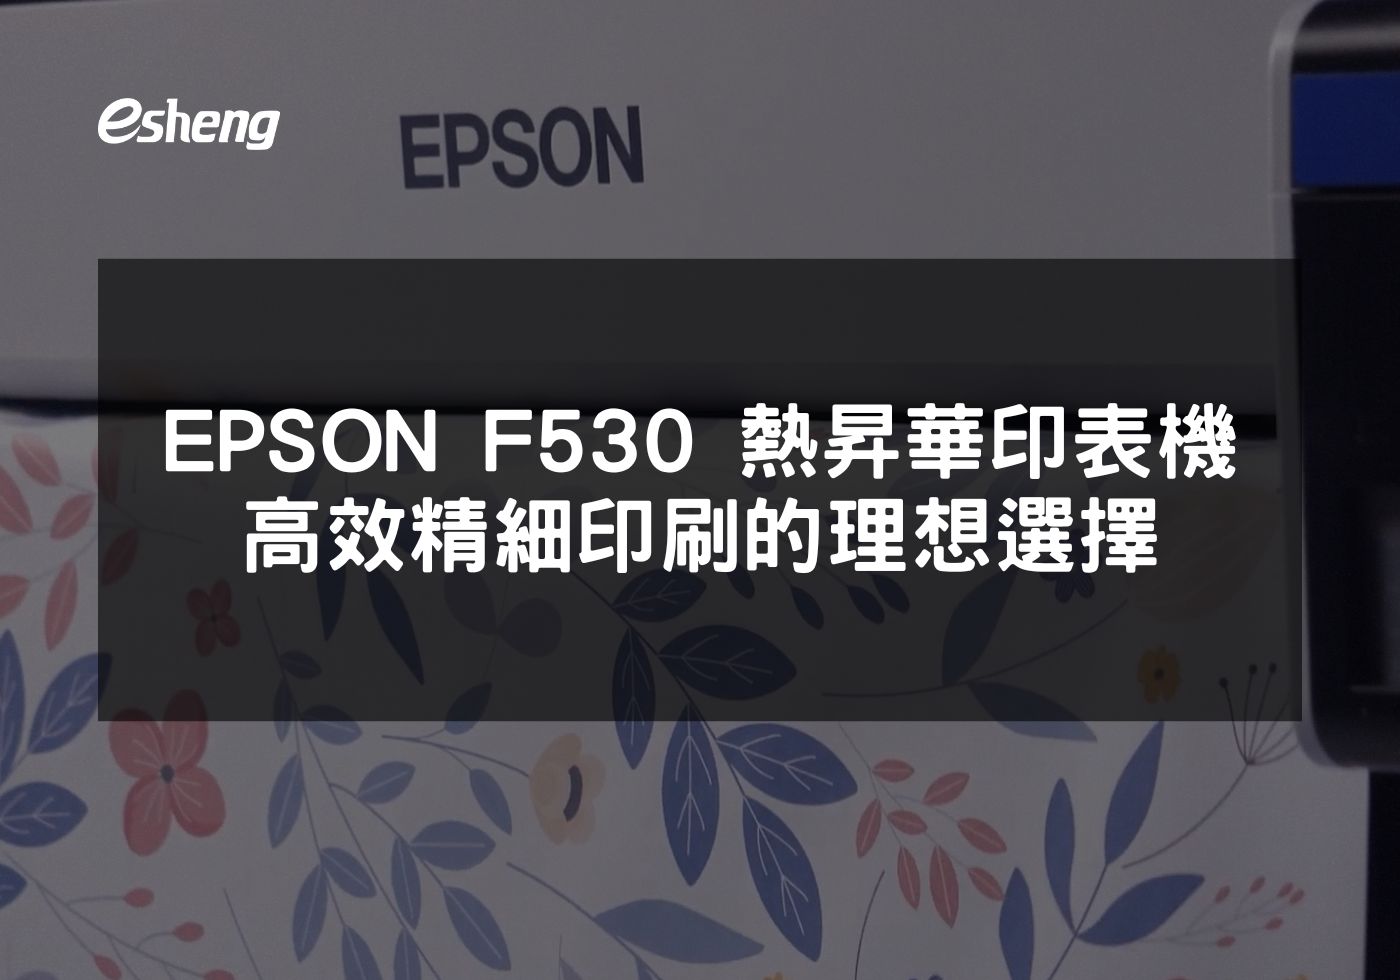 閱讀更多文章 EPSON F530 熱昇華印表機 高效精細印刷的理想選擇